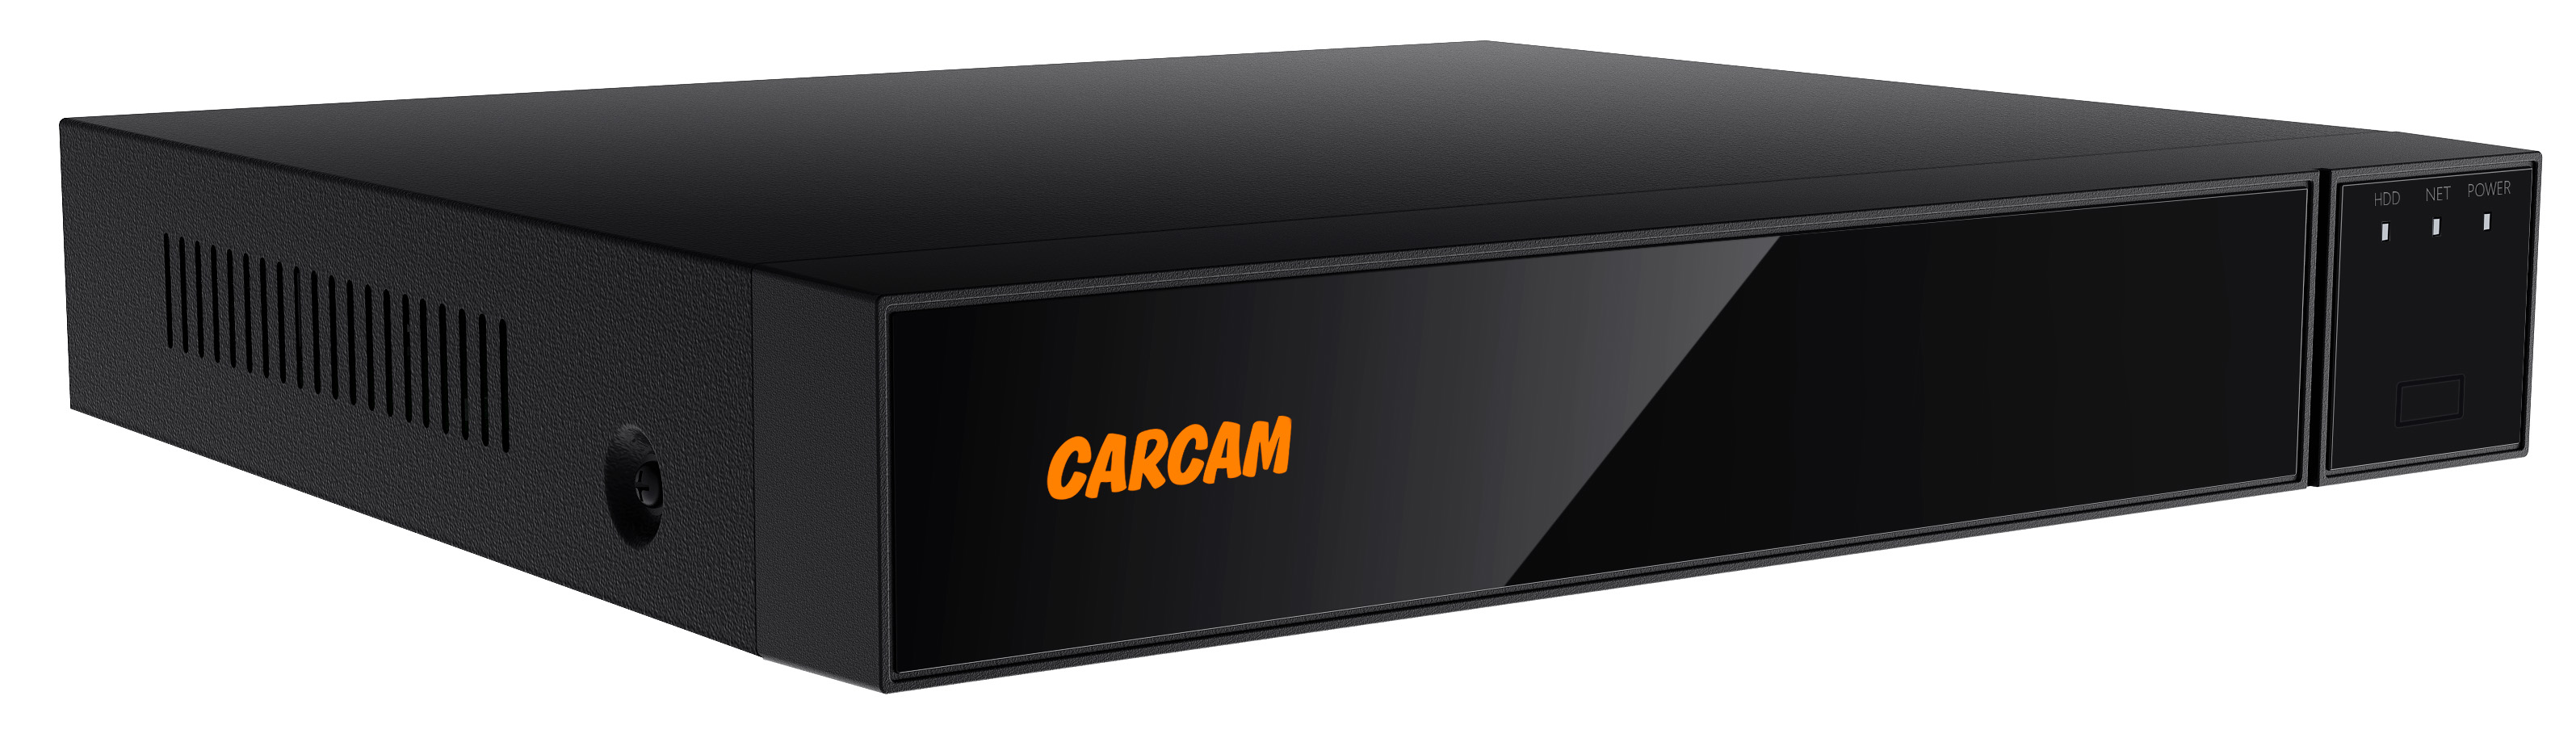 16-канальный гибридный видеорегистратор CARCAM 16CH XVR 8716 32 канальный ip видеорегистратор carcam 32ch nvr 8732